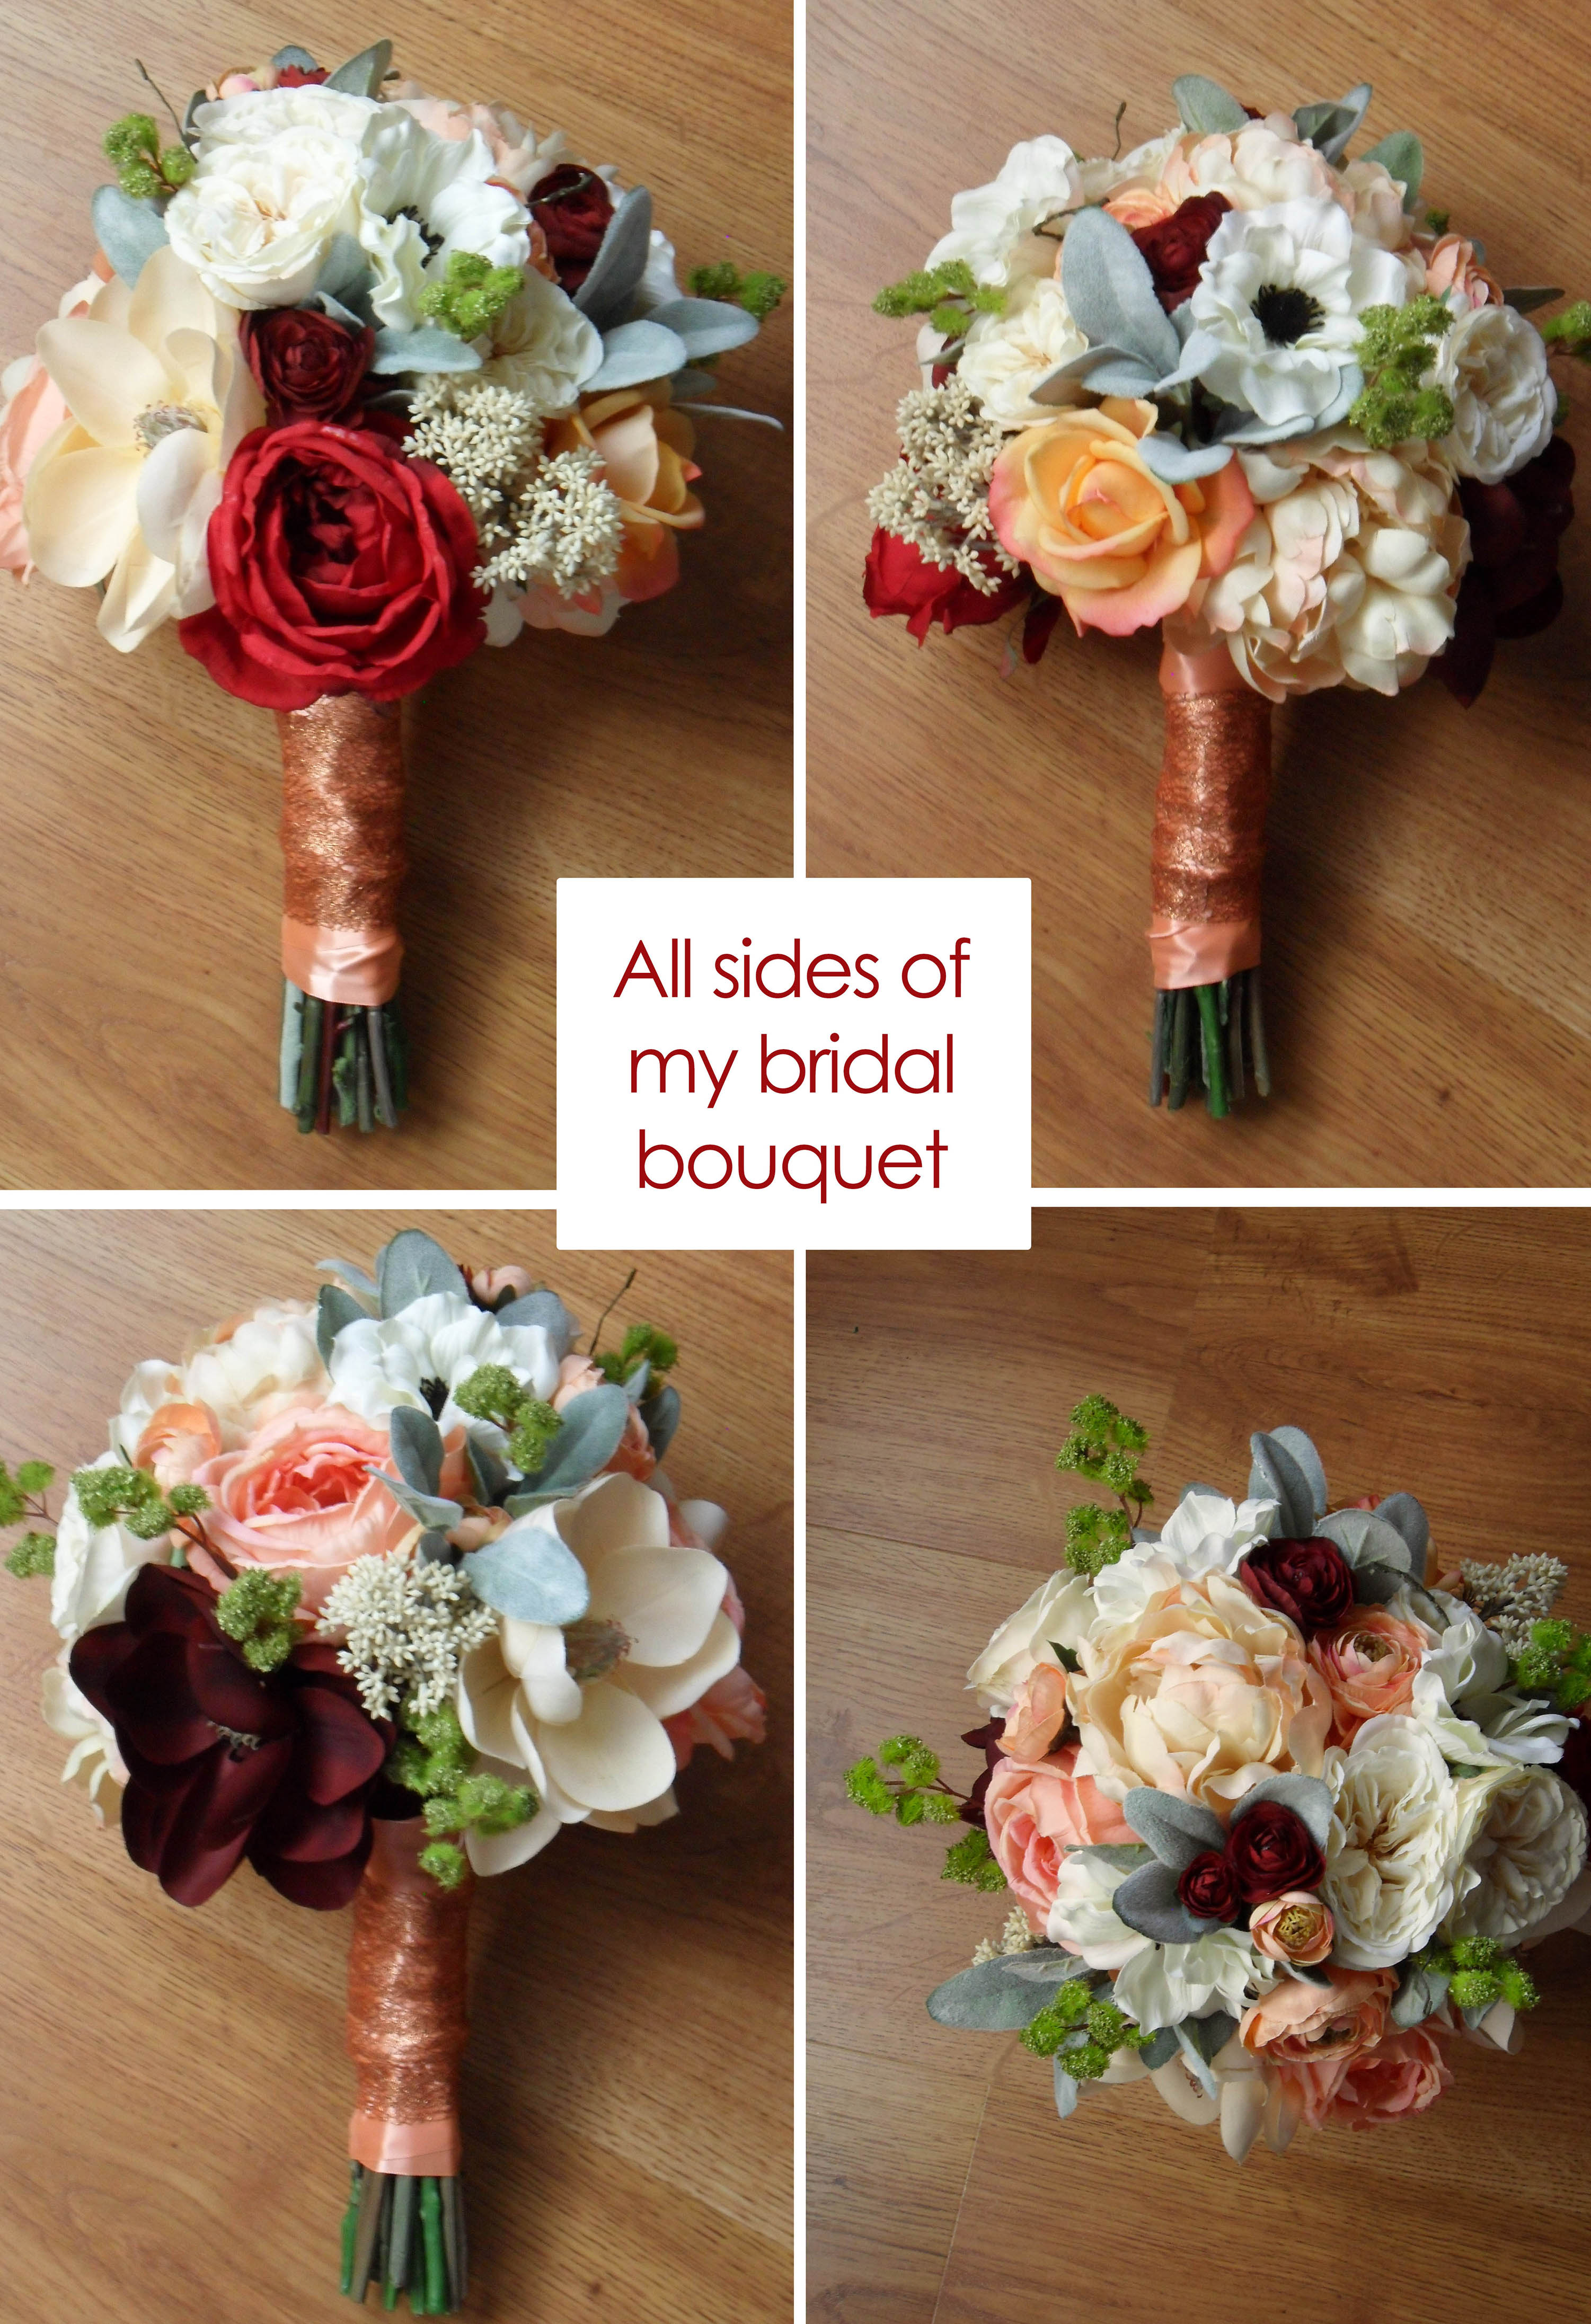 Floral Arrangement Tool Kit Stem Wire Florist Supplies DIY Wedding Bouquet  Kit